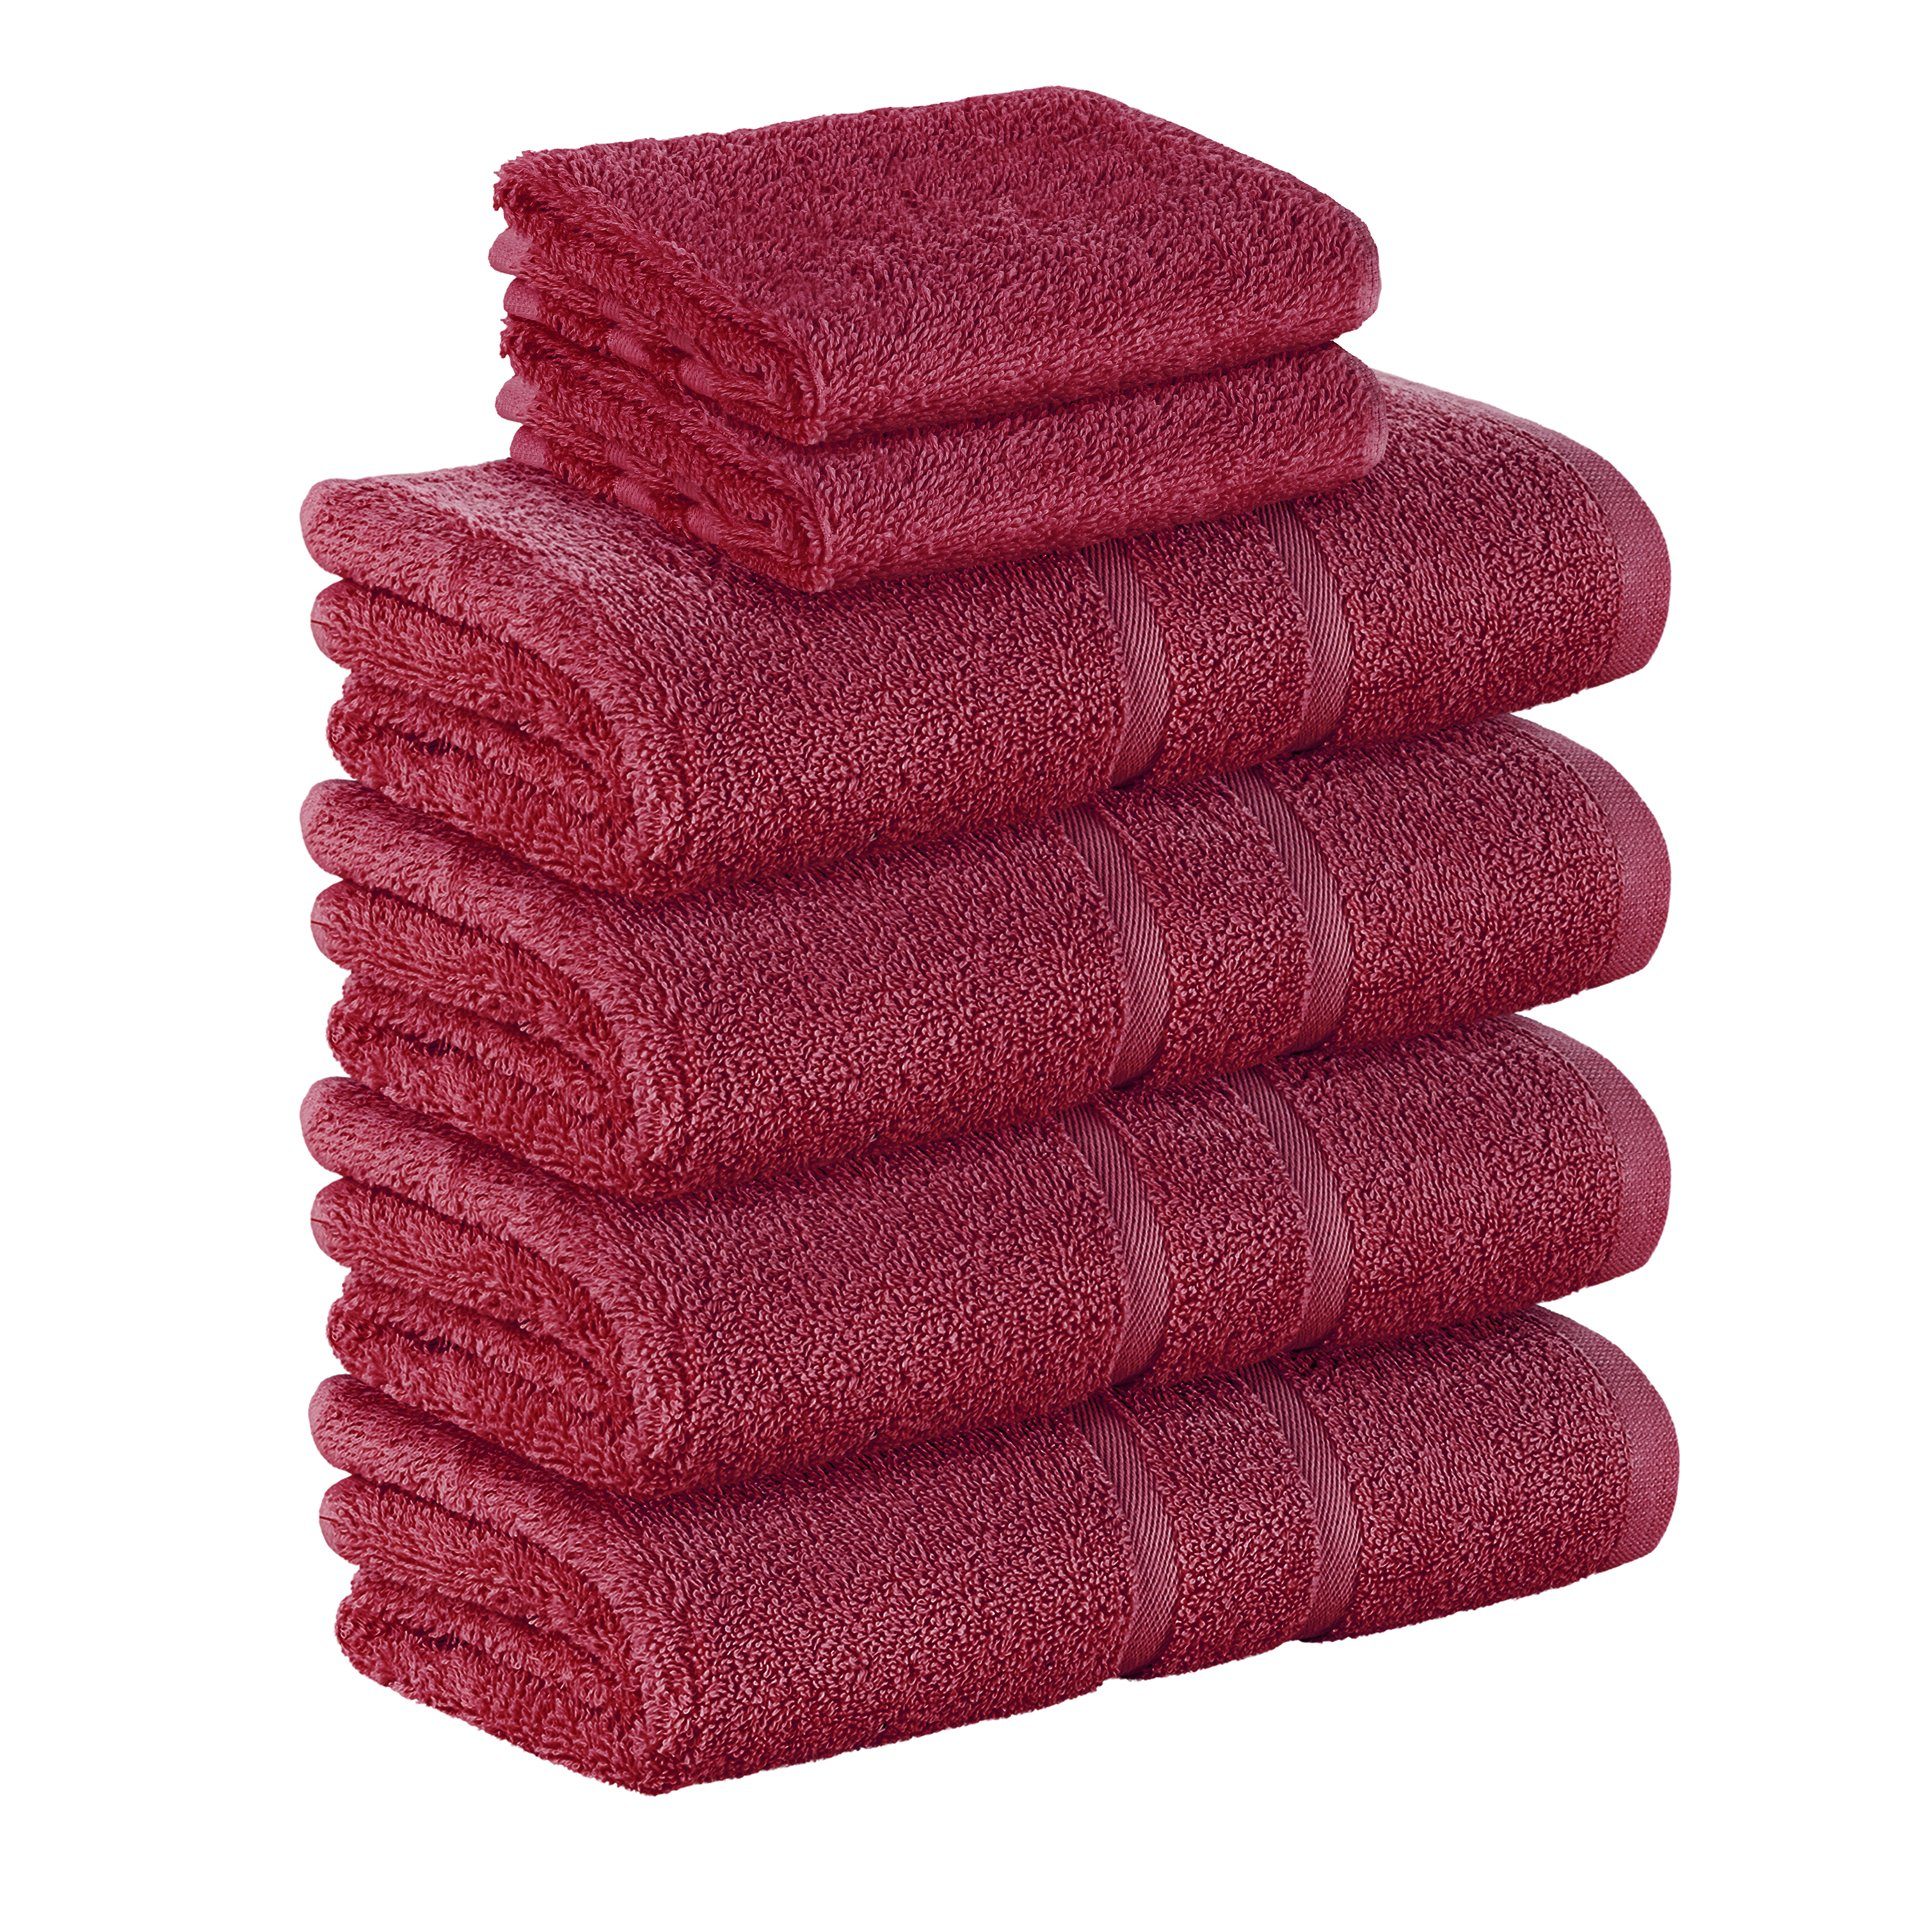 StickandShine Handtuch Set 2x Gästehandtuch 4x Handtücher als SET in verschiedenen Farben (6 Teilig) 100% Baumwolle 500 GSM Frottee 6er Handtuch Pack, 100% Baumwolle 500 GSM Bordeaux | Handtuch-Sets